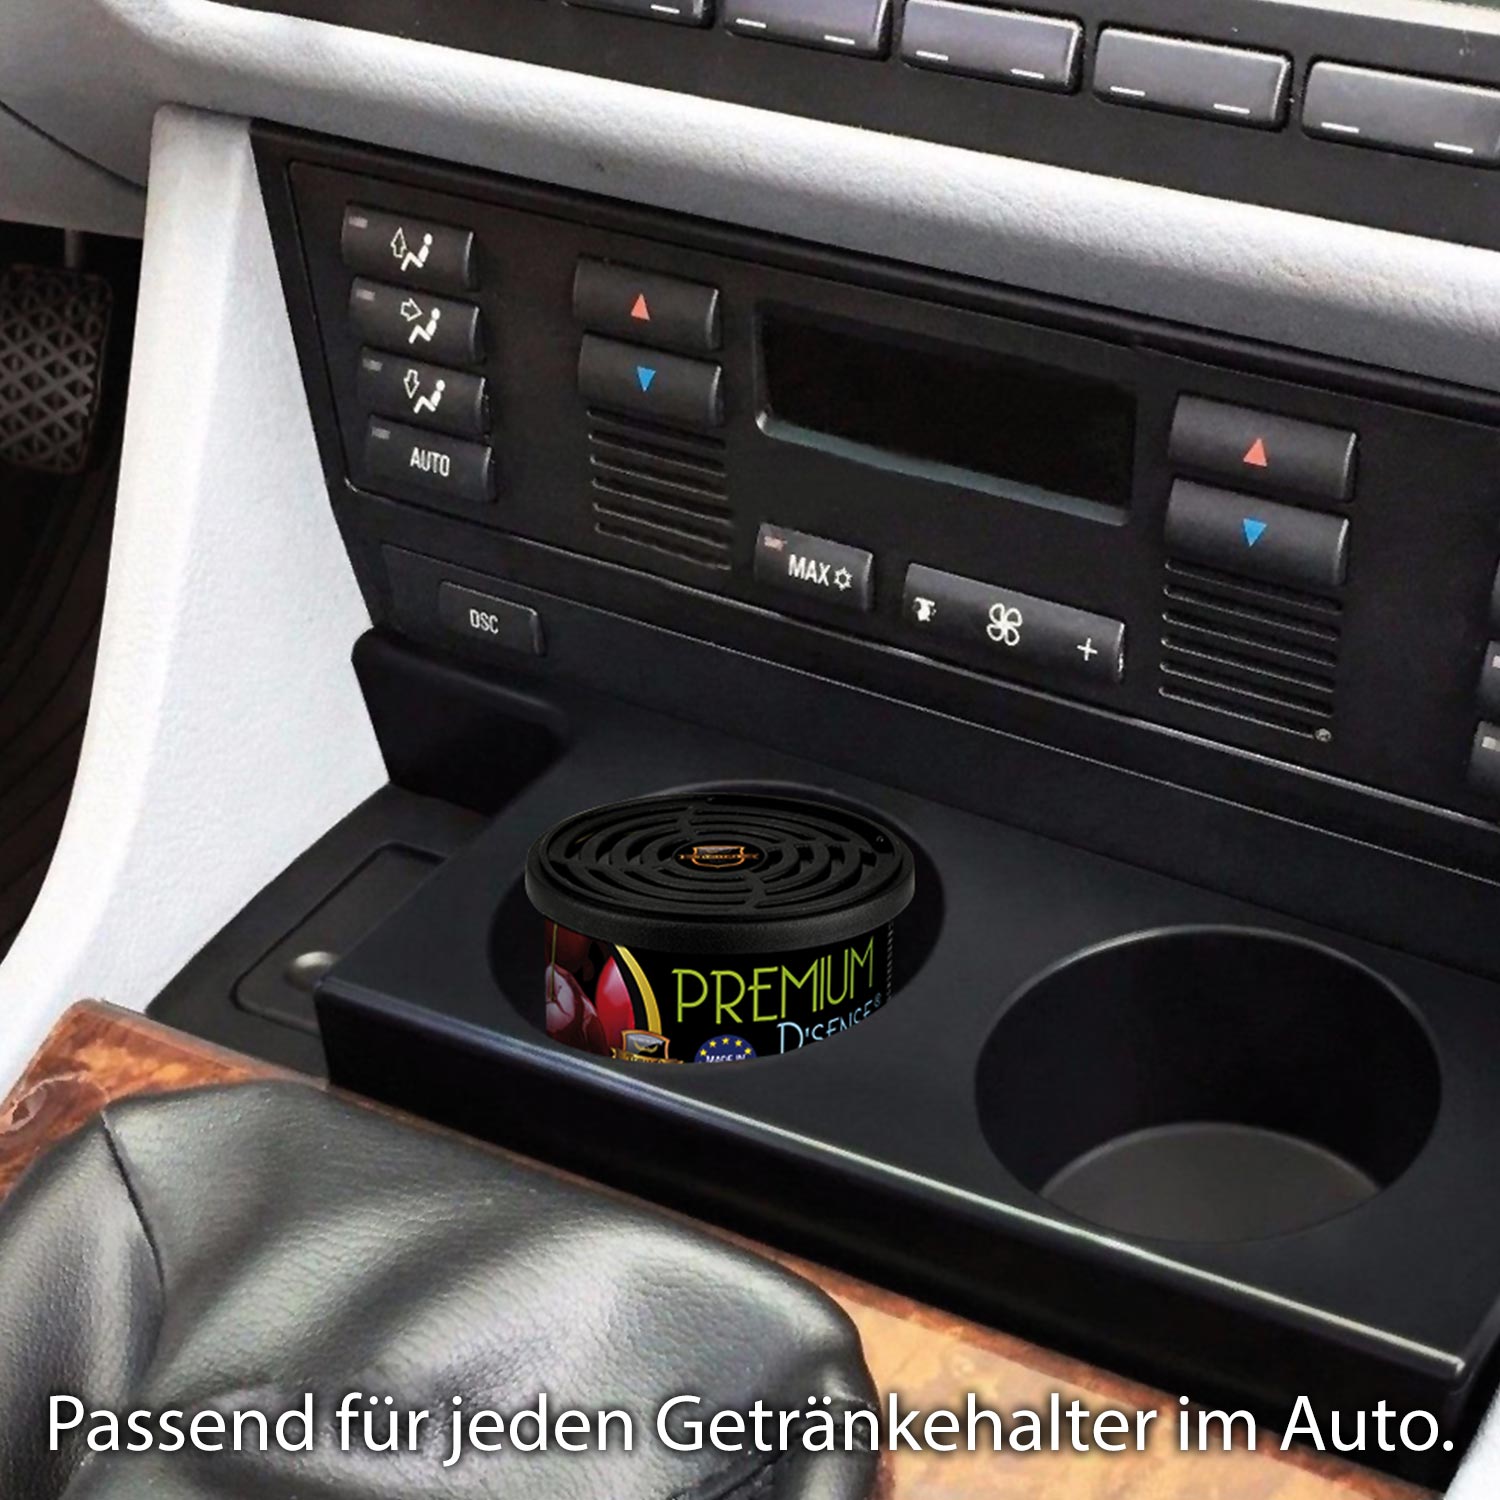 Autoduft Premium D'Sense  Lufterfrischer verschiedene Düfte